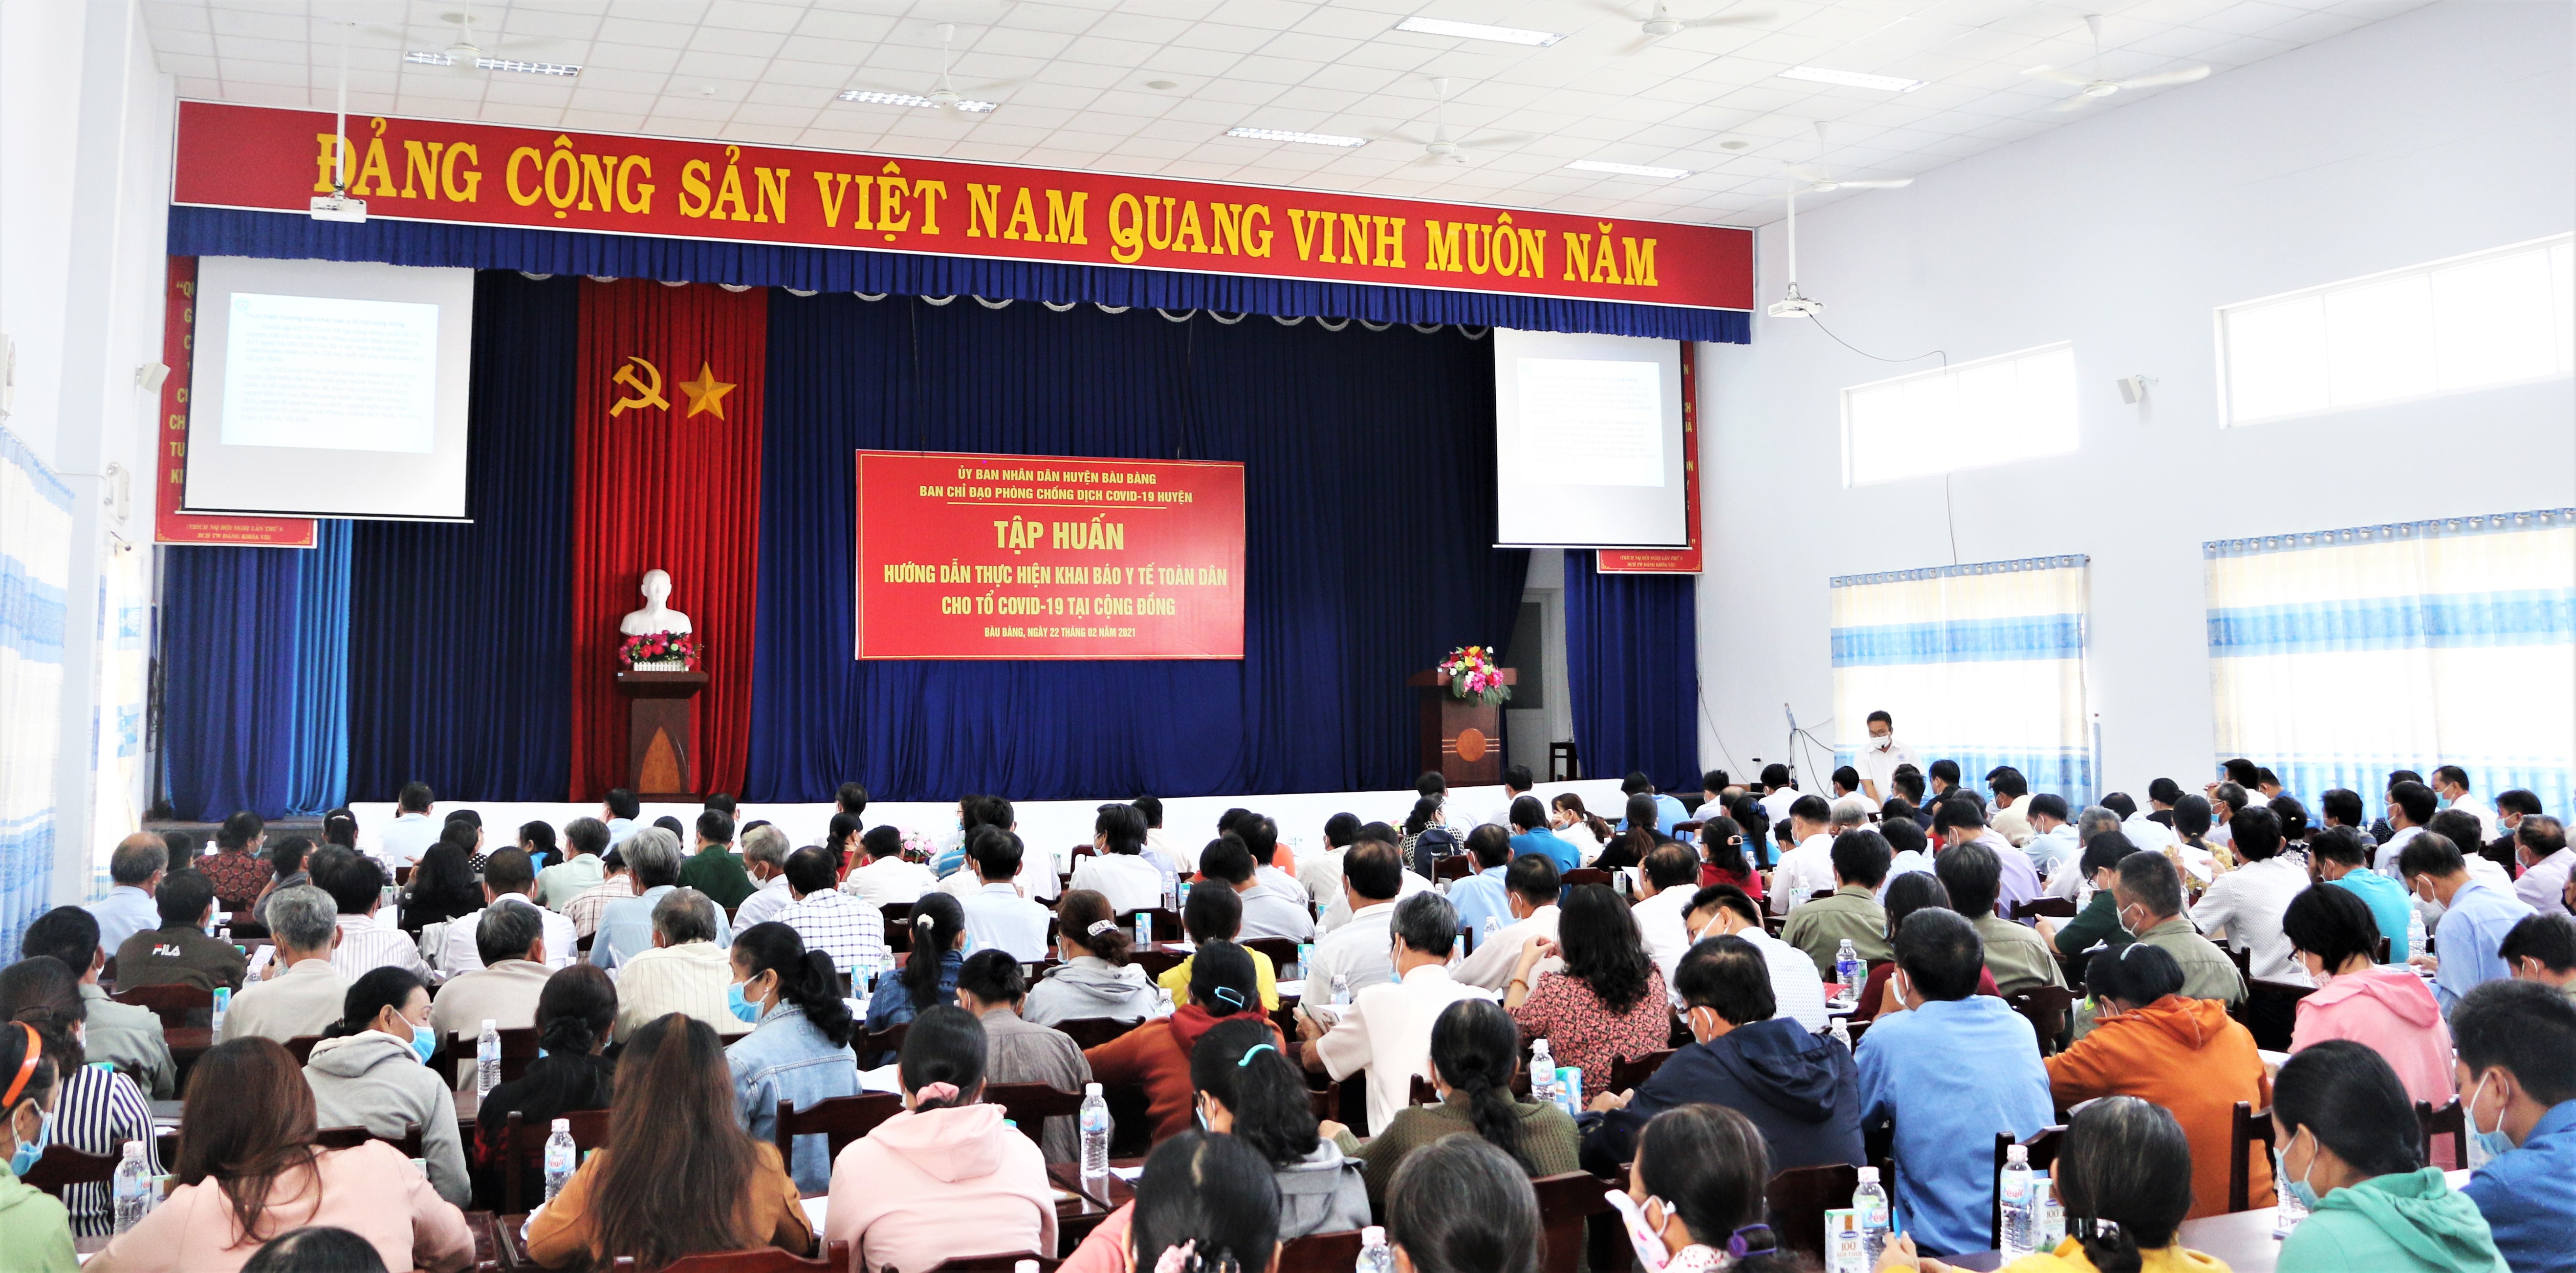 Huyện Bàu Bàng tổ chức hội nghị tập huấn thực hiện khai báo y tế toàn dân cho tổ an toàn Covid-19 tại cộng đồng